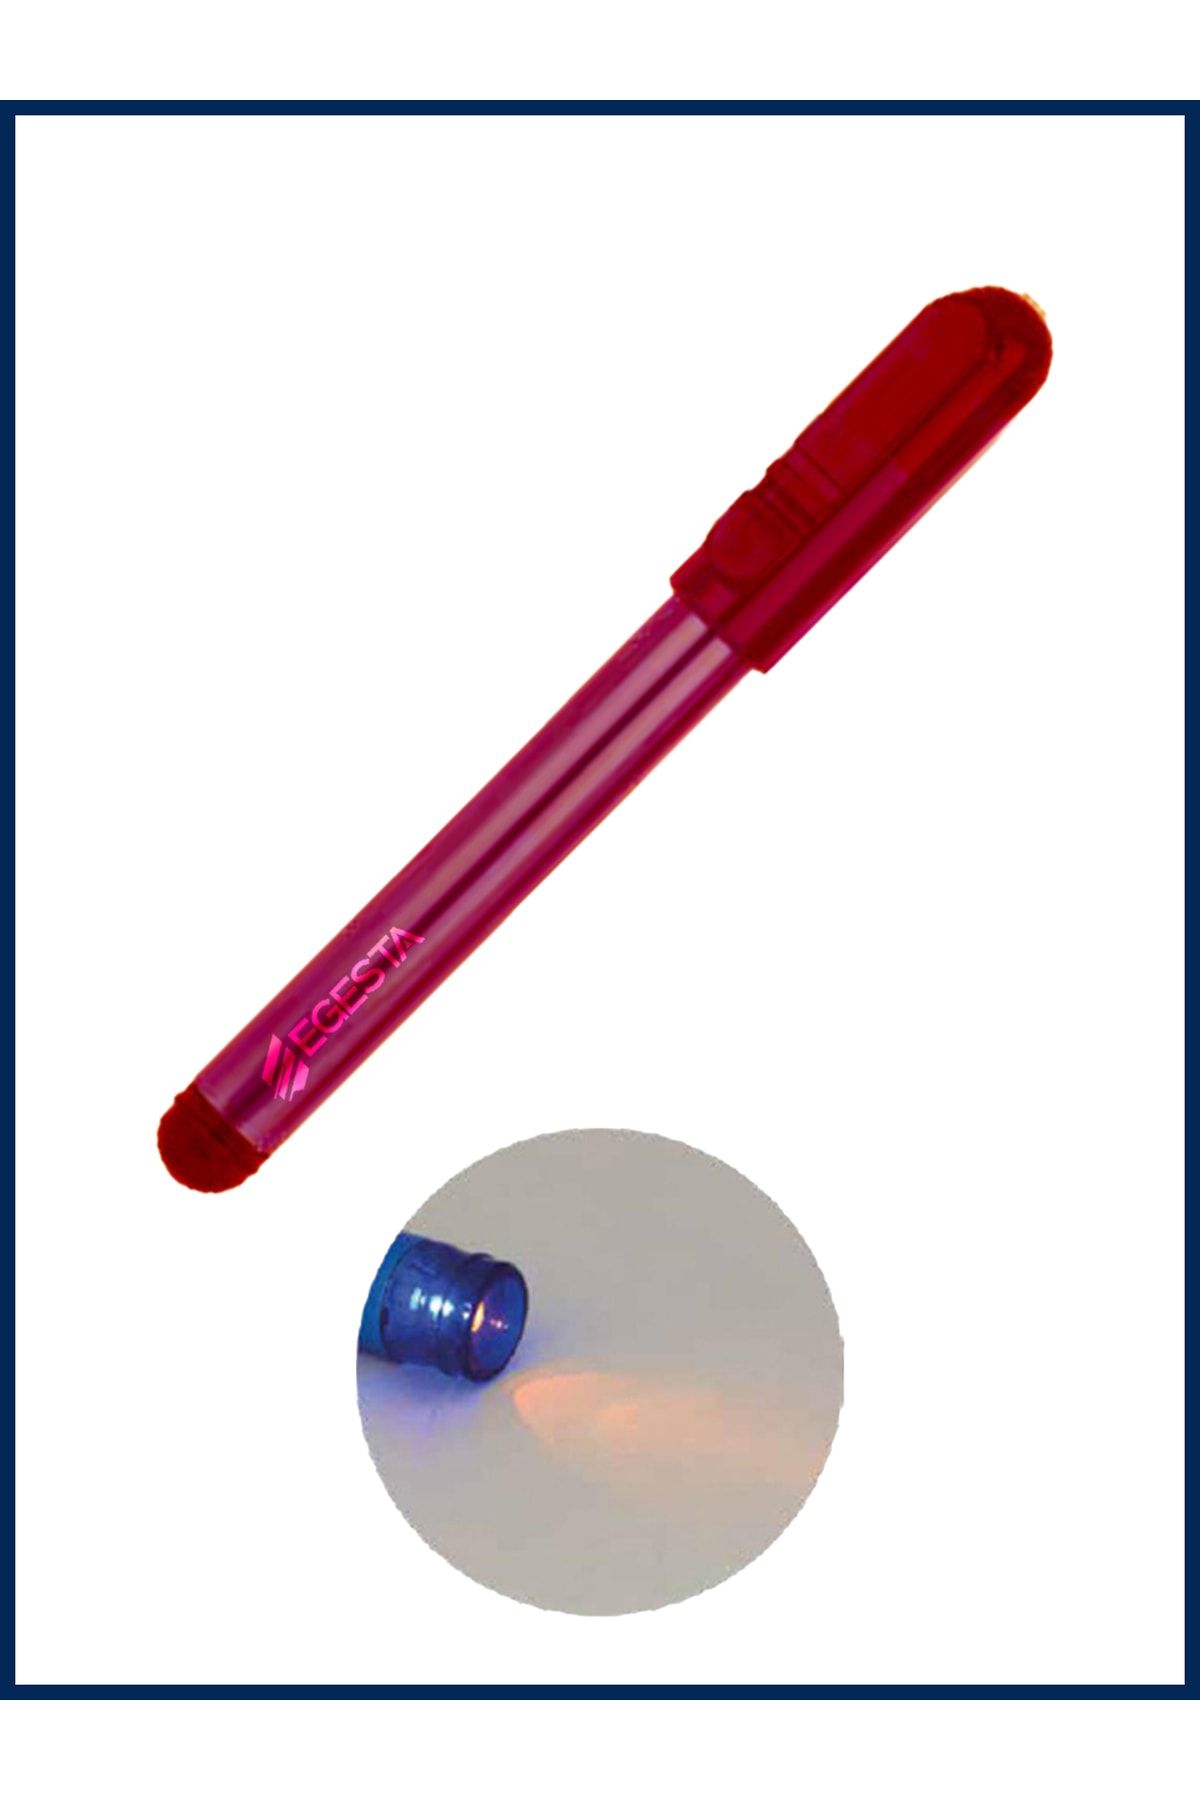 EGESTA Led Işıklı Metal Doktor Muayene Kalemi - Manyetik Penlight - Kırmızı